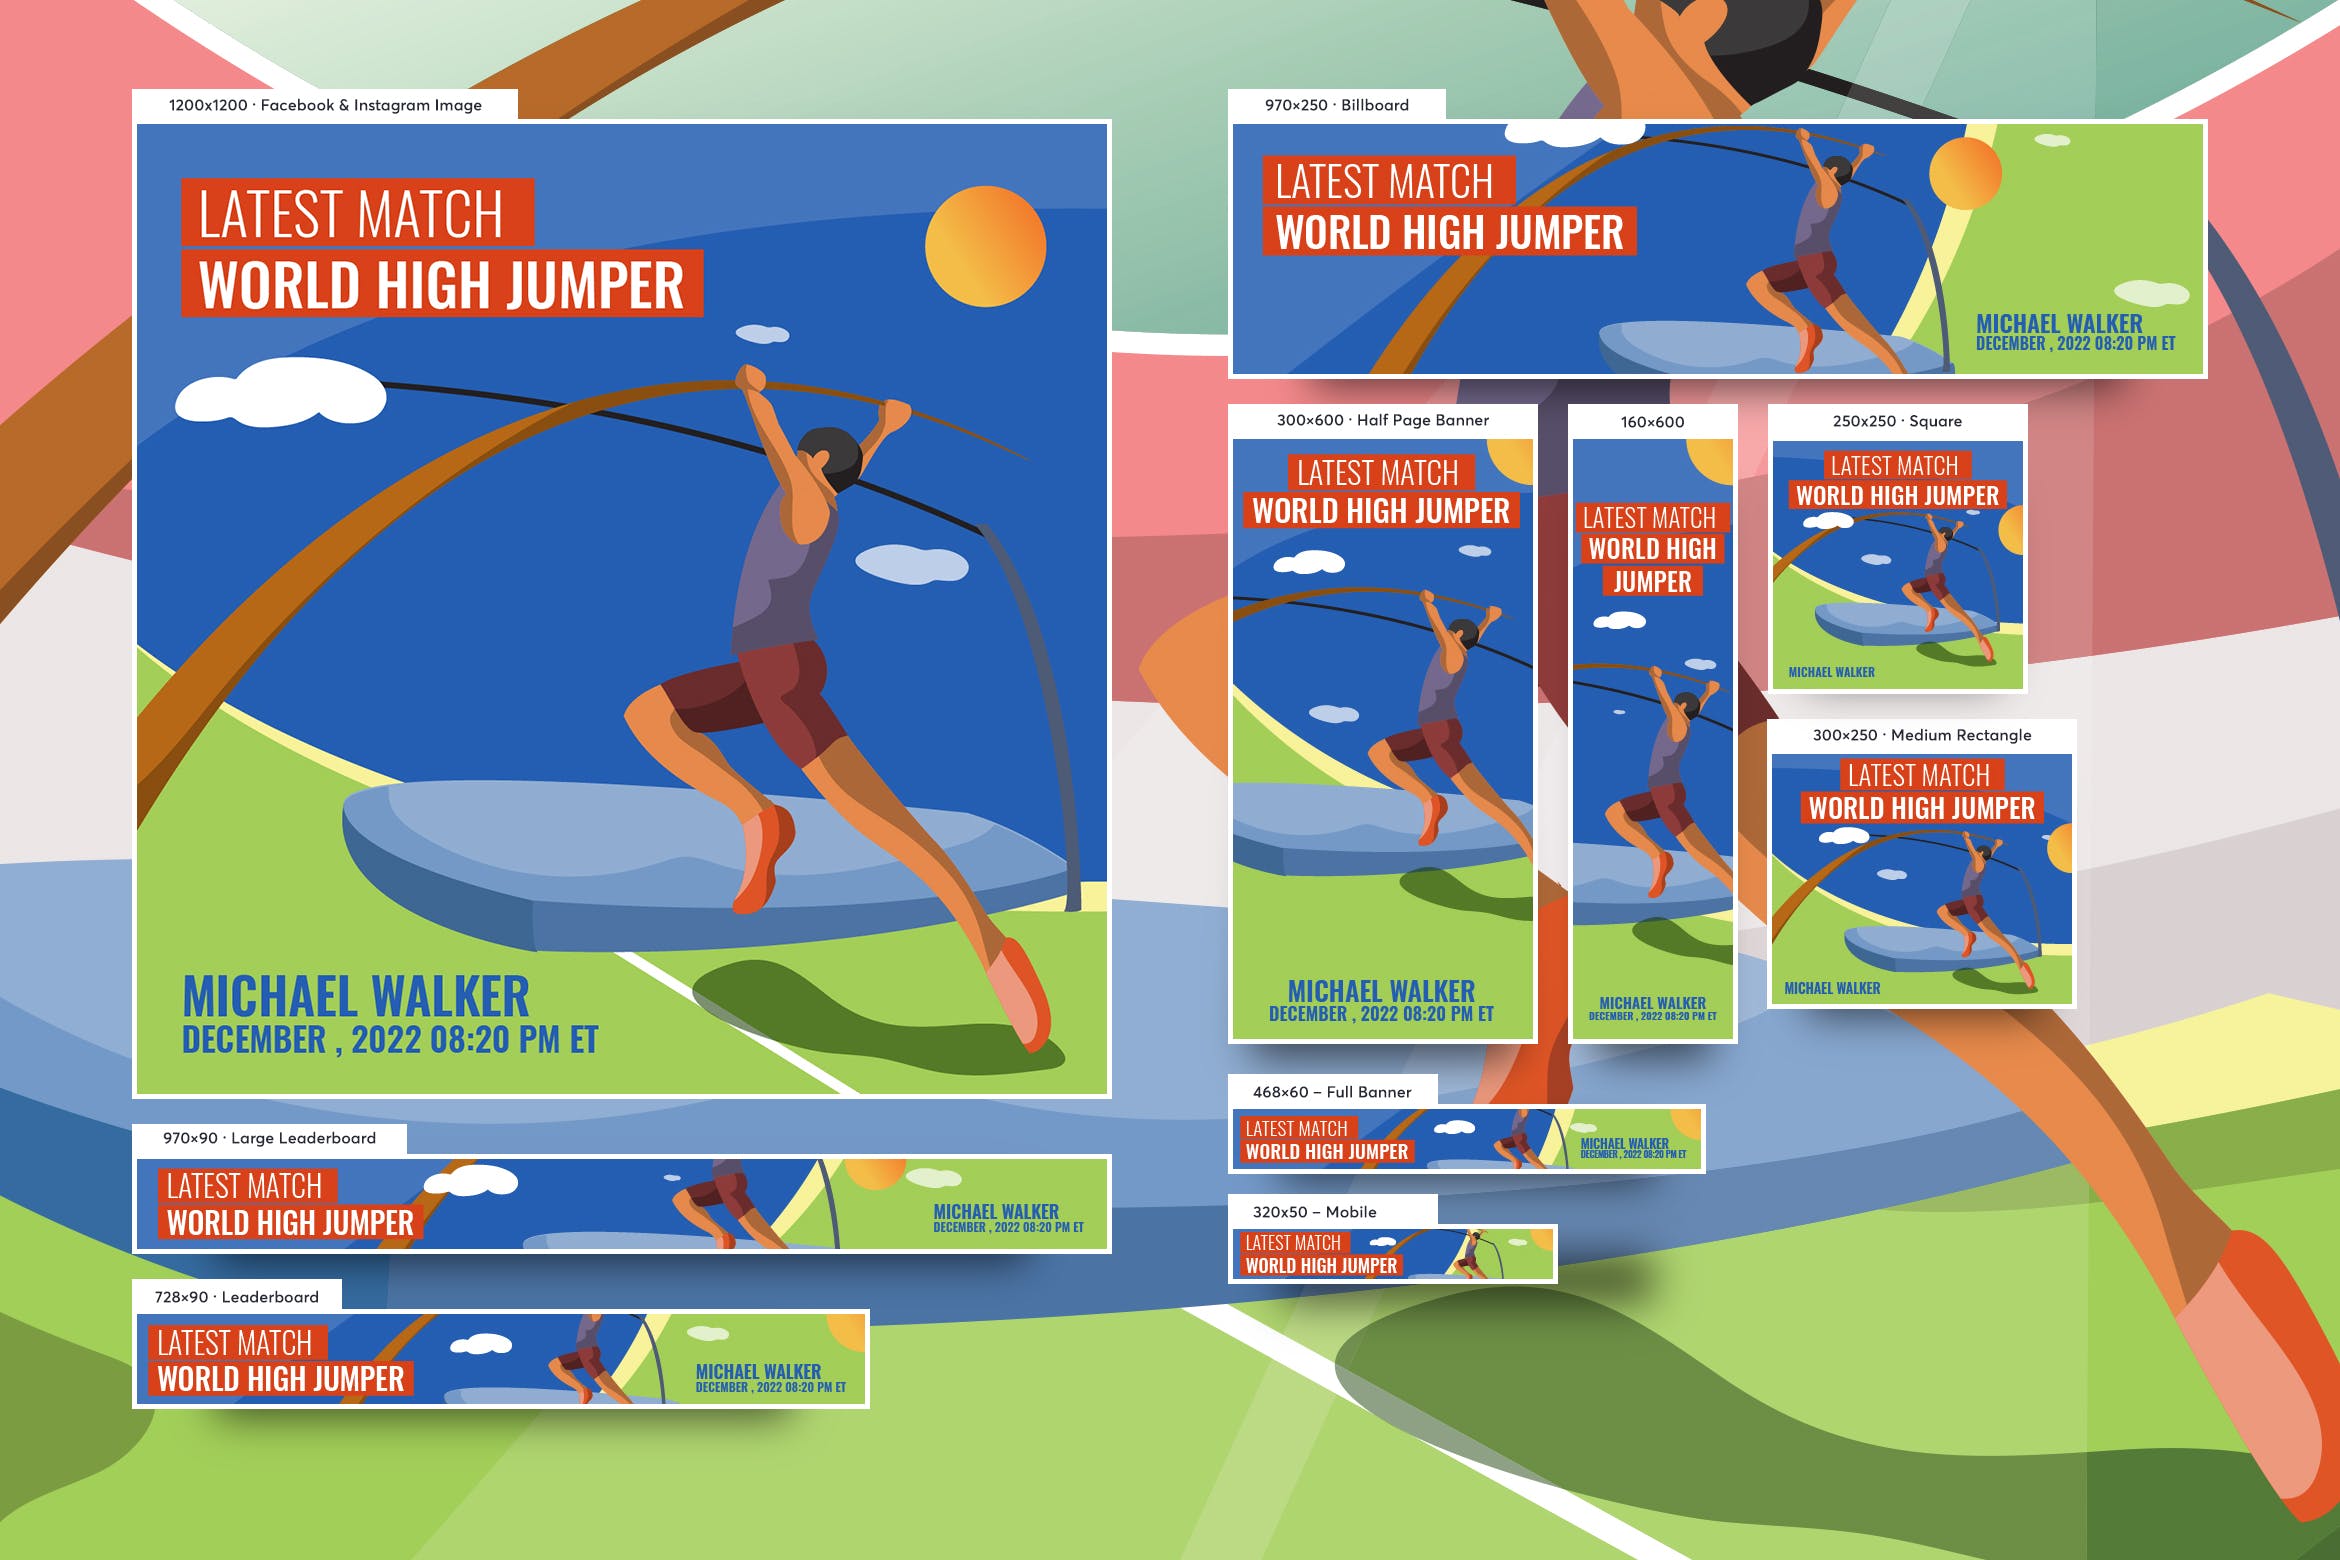 体育运动主题常见尺寸规格网站Banner图设计模板 Male High Jumper Banners Ad Vector Illustration插图